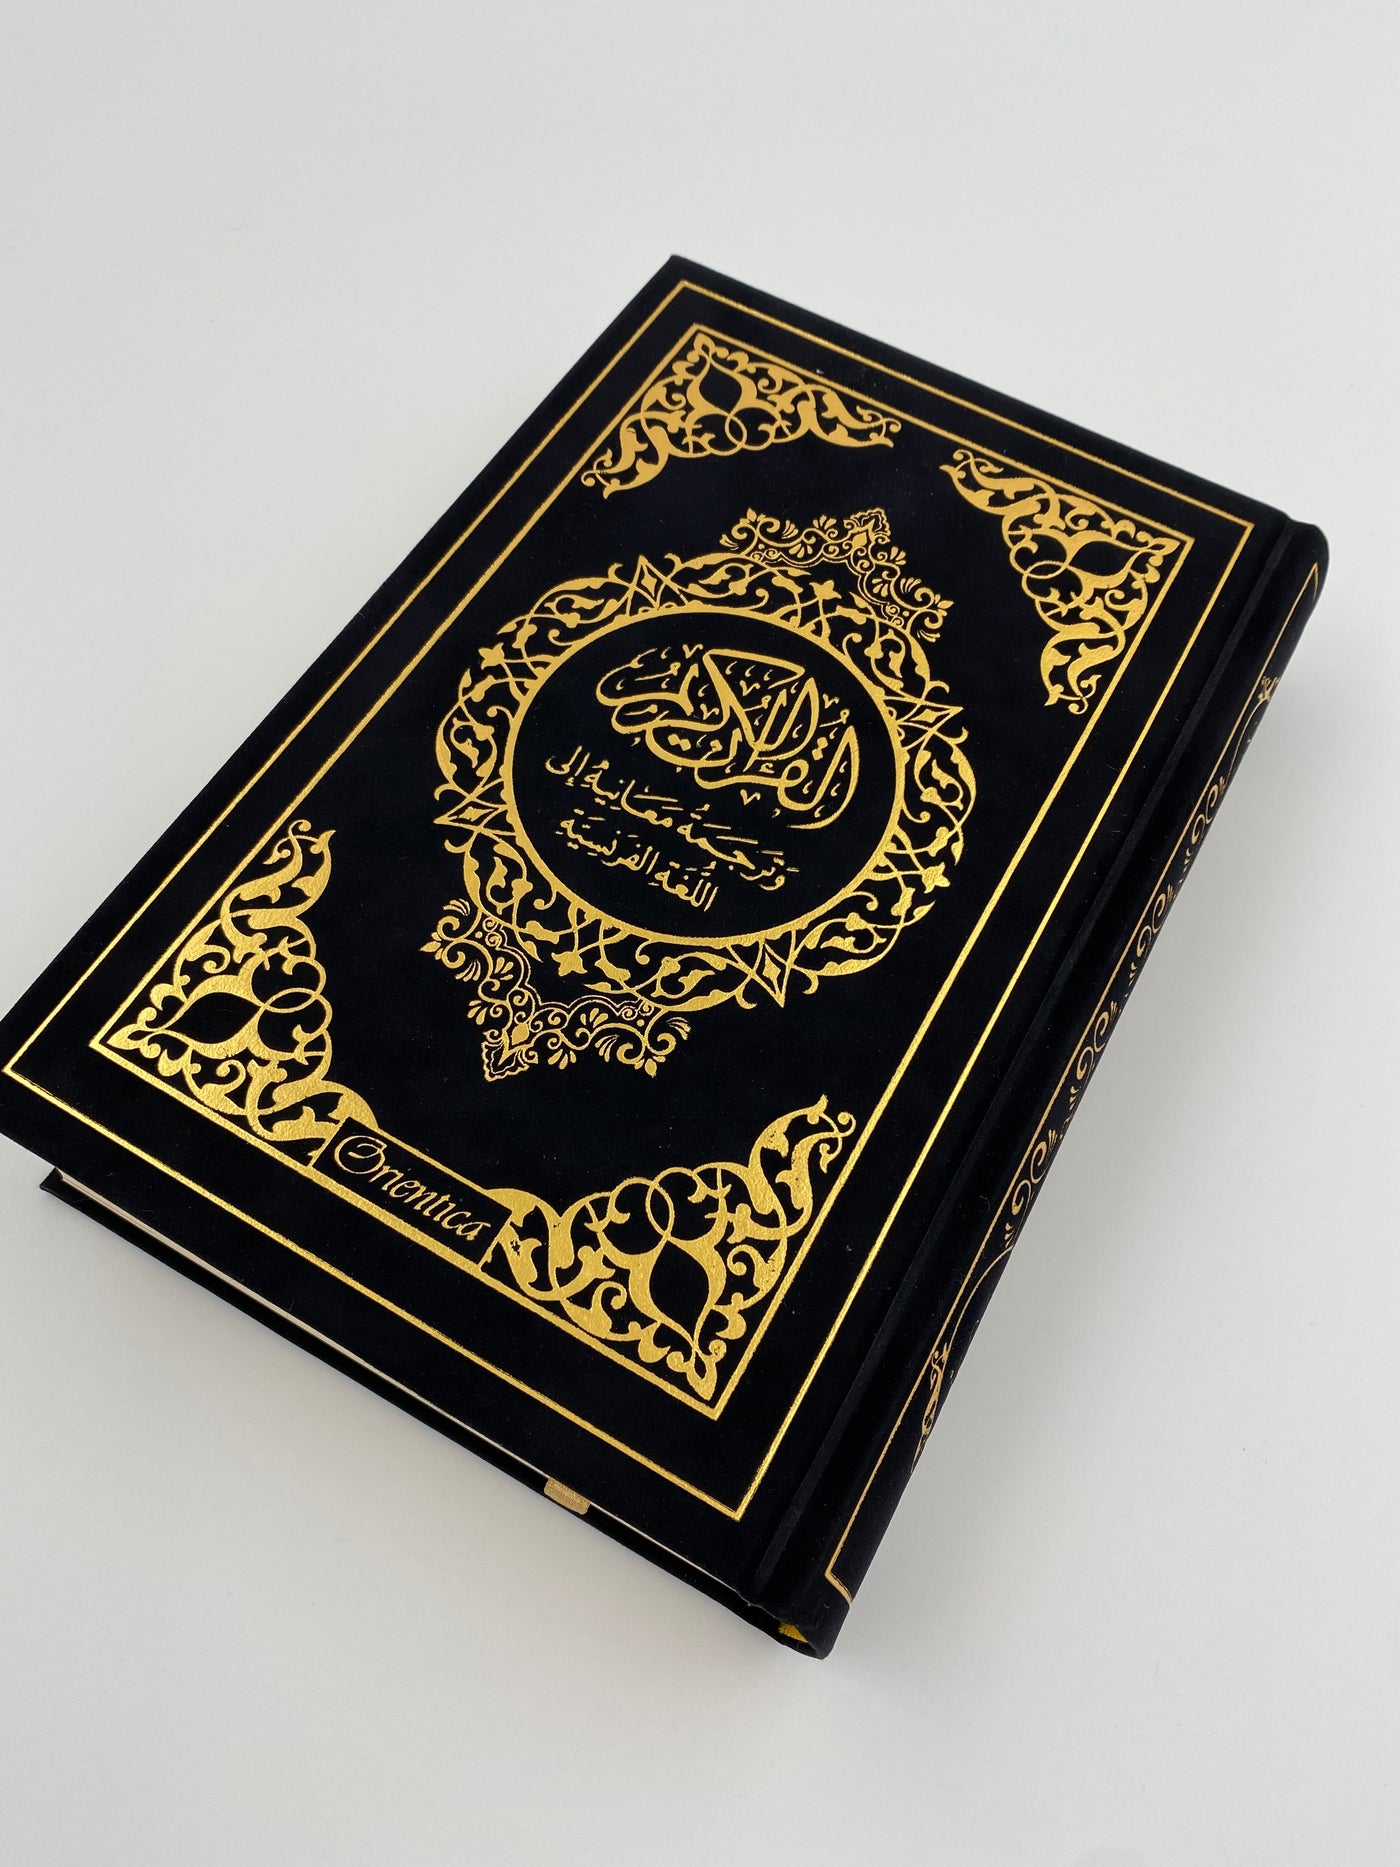 Der Edle Koran und die französische Übersetzung seiner schwarzen Bedeutungen